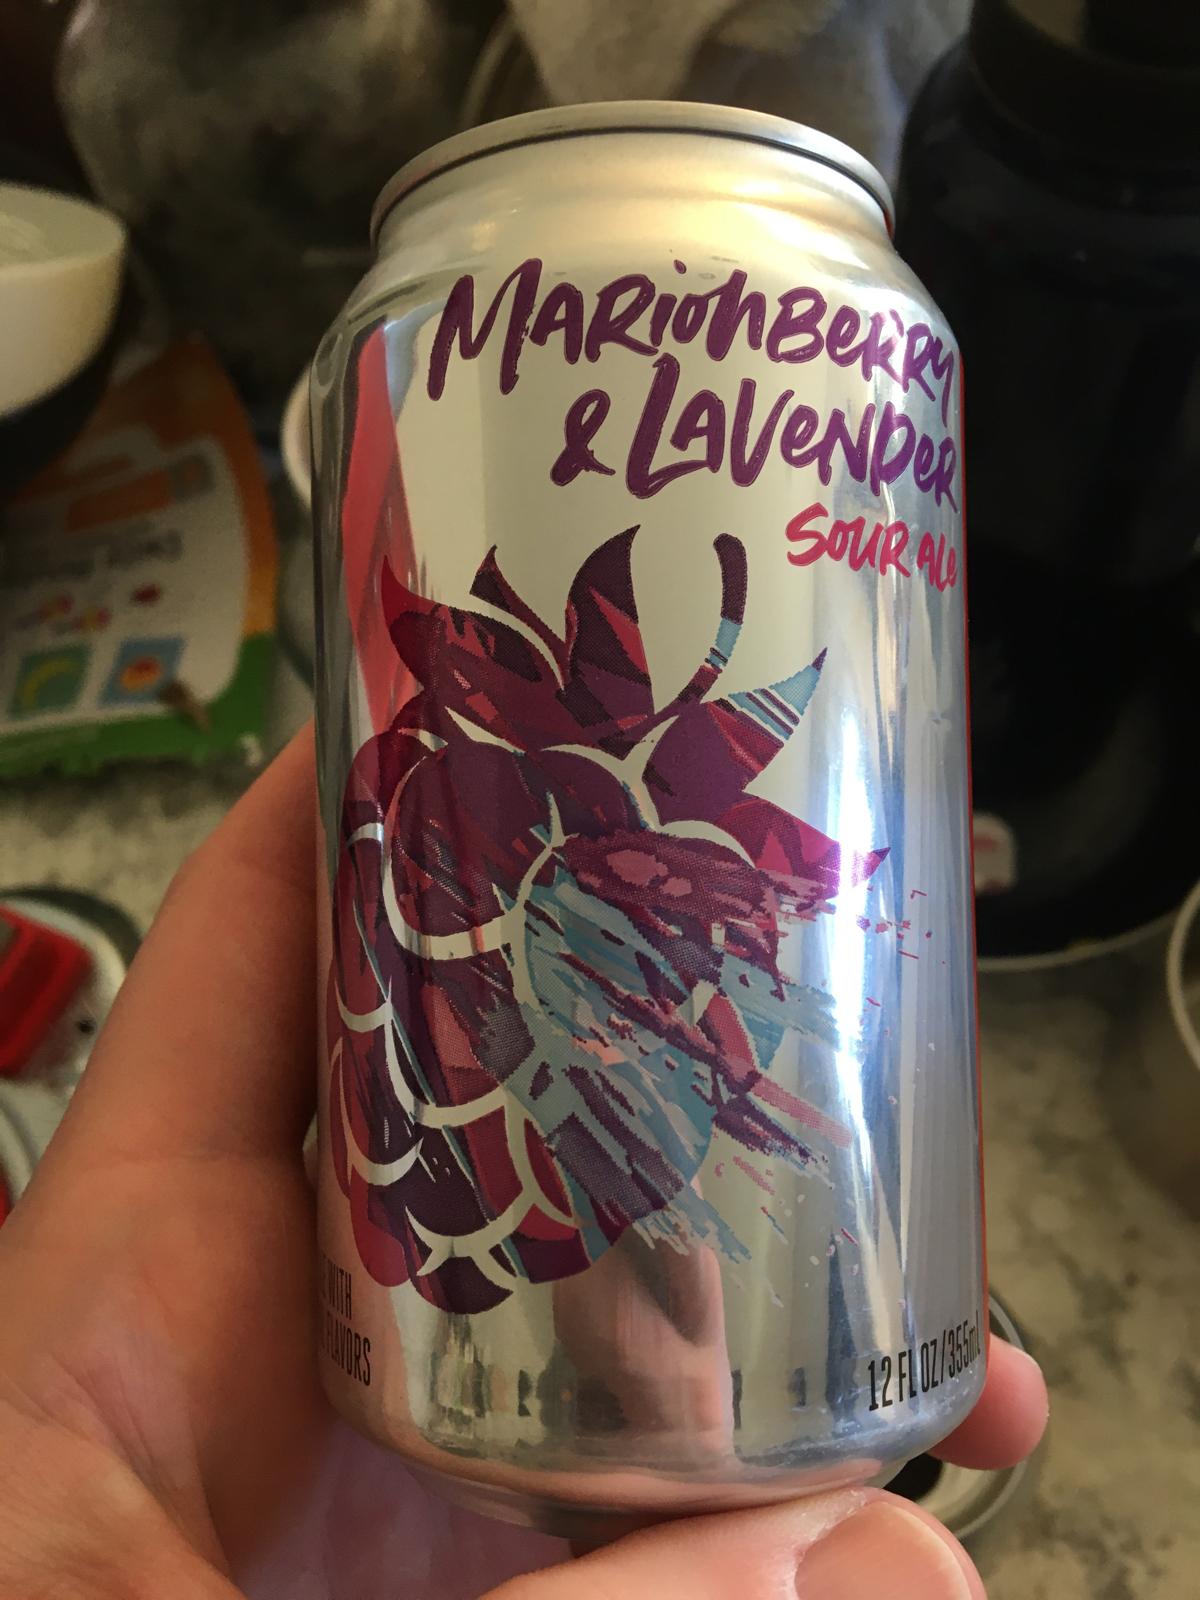 Marionberry & Lavender Sour Ale